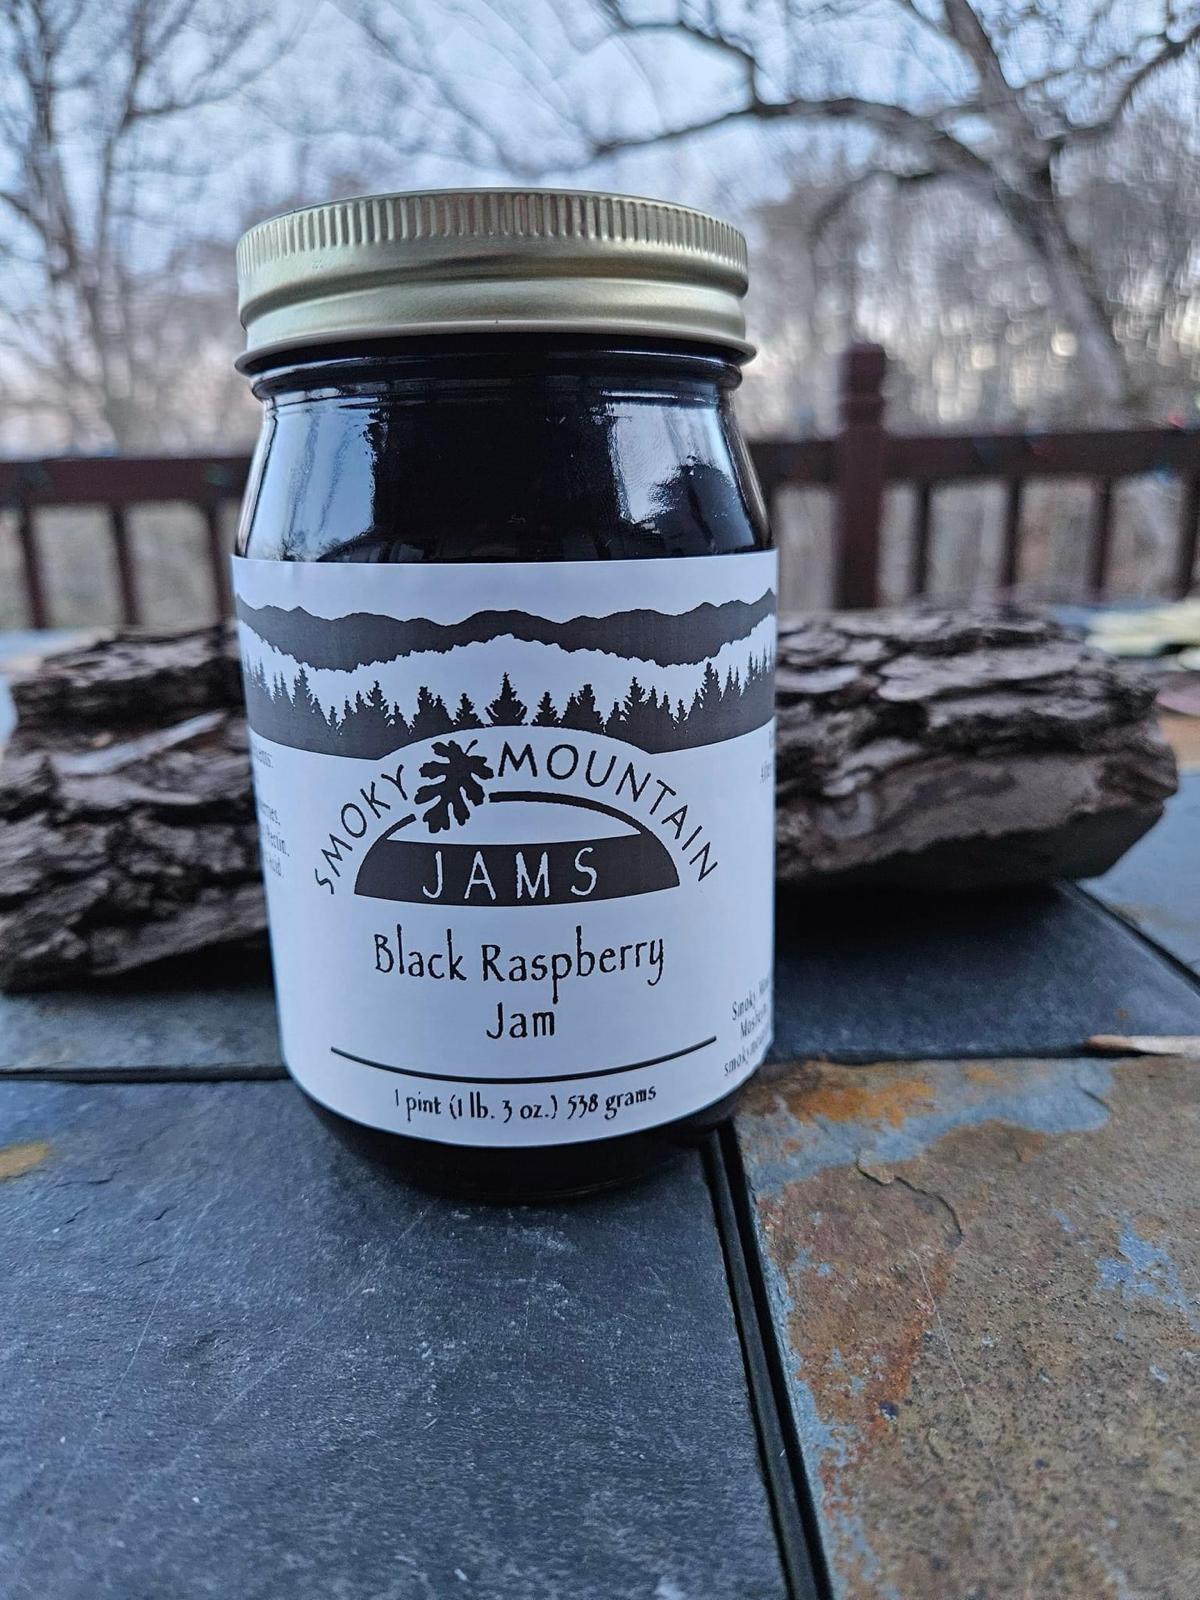 Smoky Mountain Jams Black Raspberry Jam